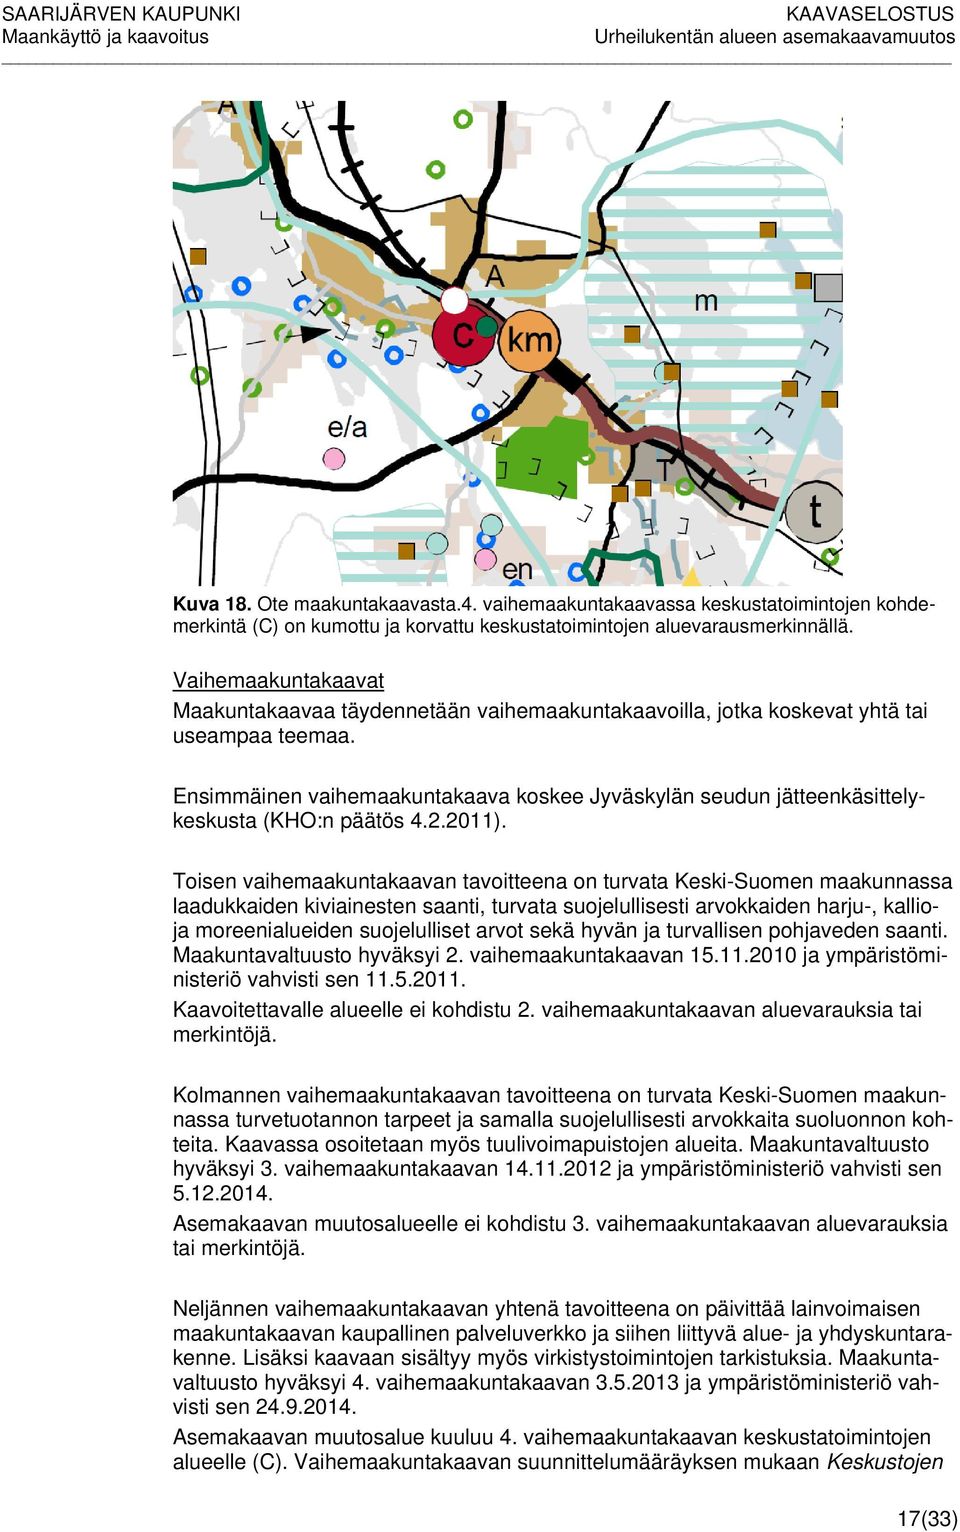 Ensimmäinen vaihemaakuntakaava koskee Jyväskylän seudun jätteenkäsittelykeskusta (KHO:n päätös 4.2.2011).